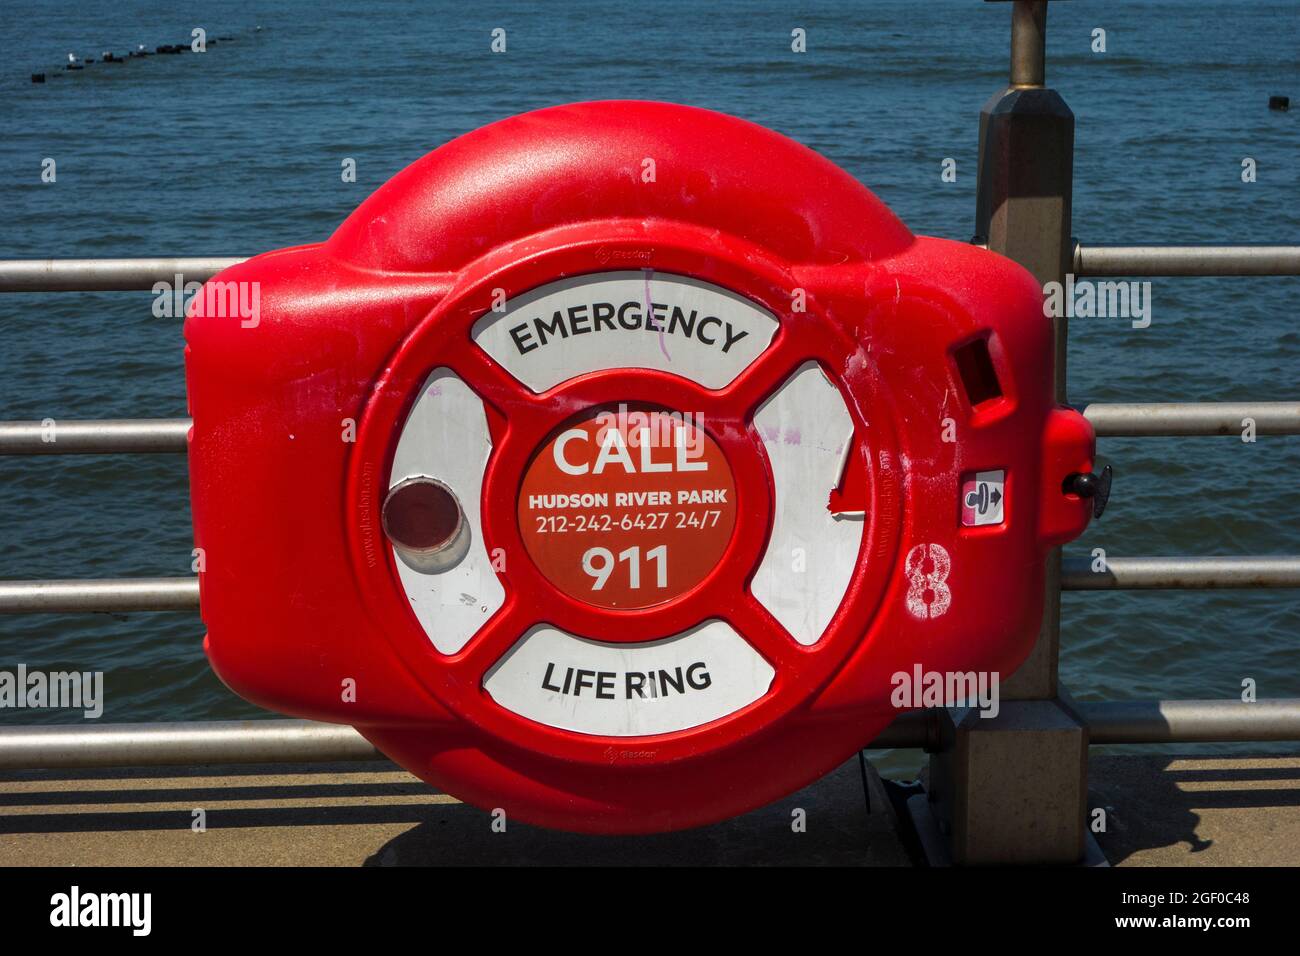 Emergency life ring in New York City, NY, USA Stock Photo